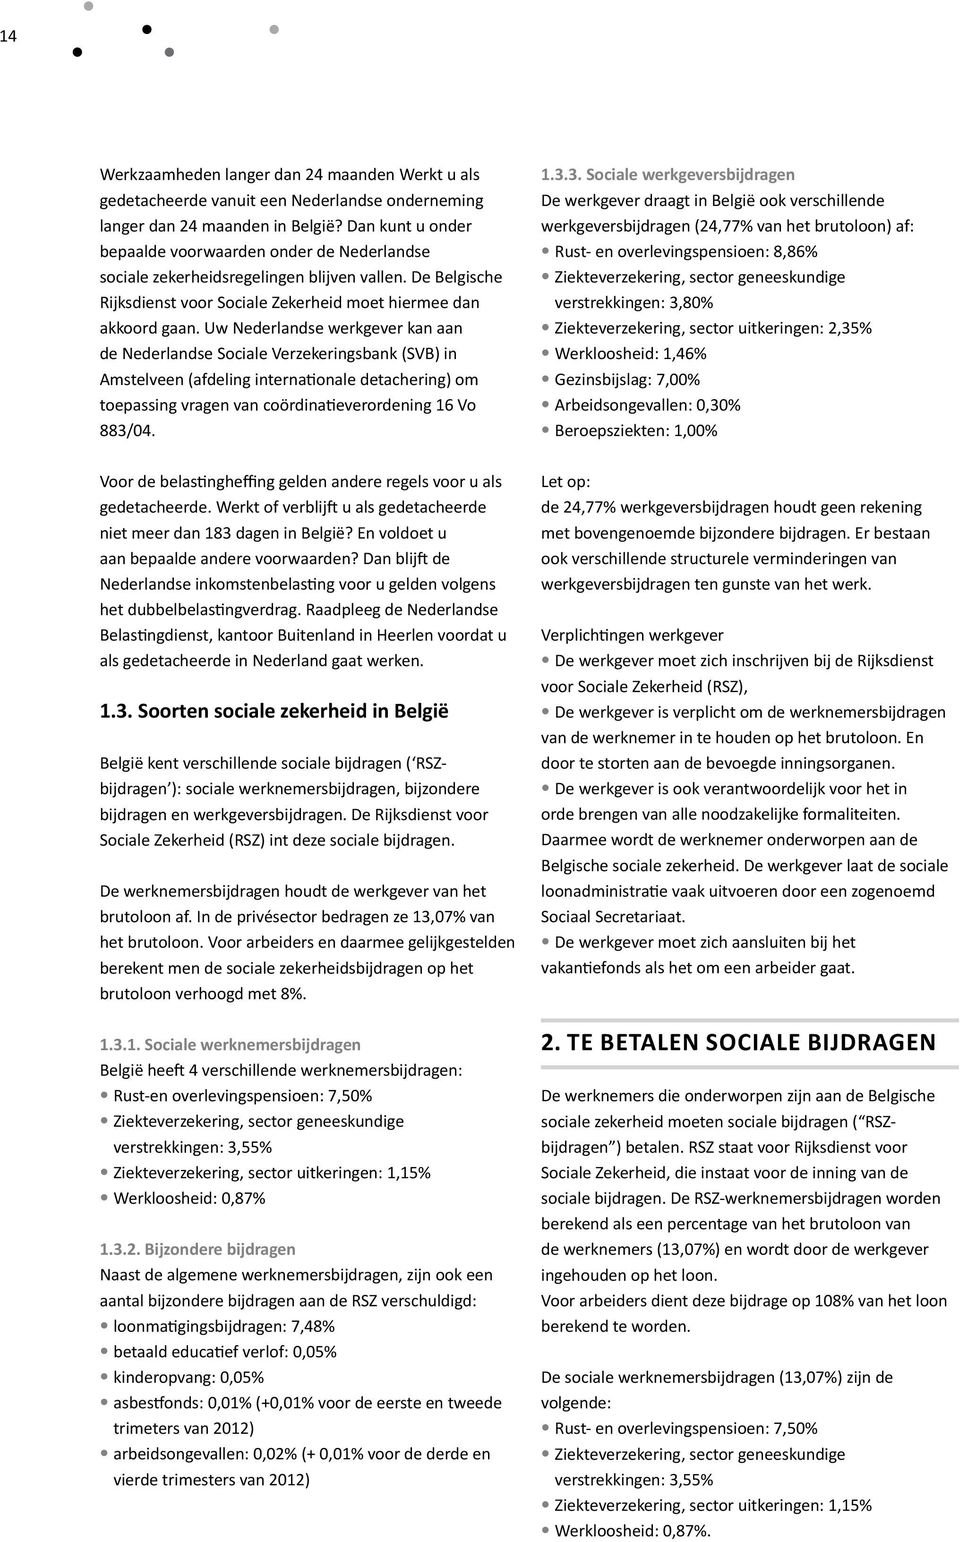 Uw Nederlandse werkgever kan aan de Nederlandse Sociale Verzekeringsbank (SVB) in Amstelveen (afdeling internationale detachering) om toepassing vragen van coördinatieverordening 16 Vo 883/04.